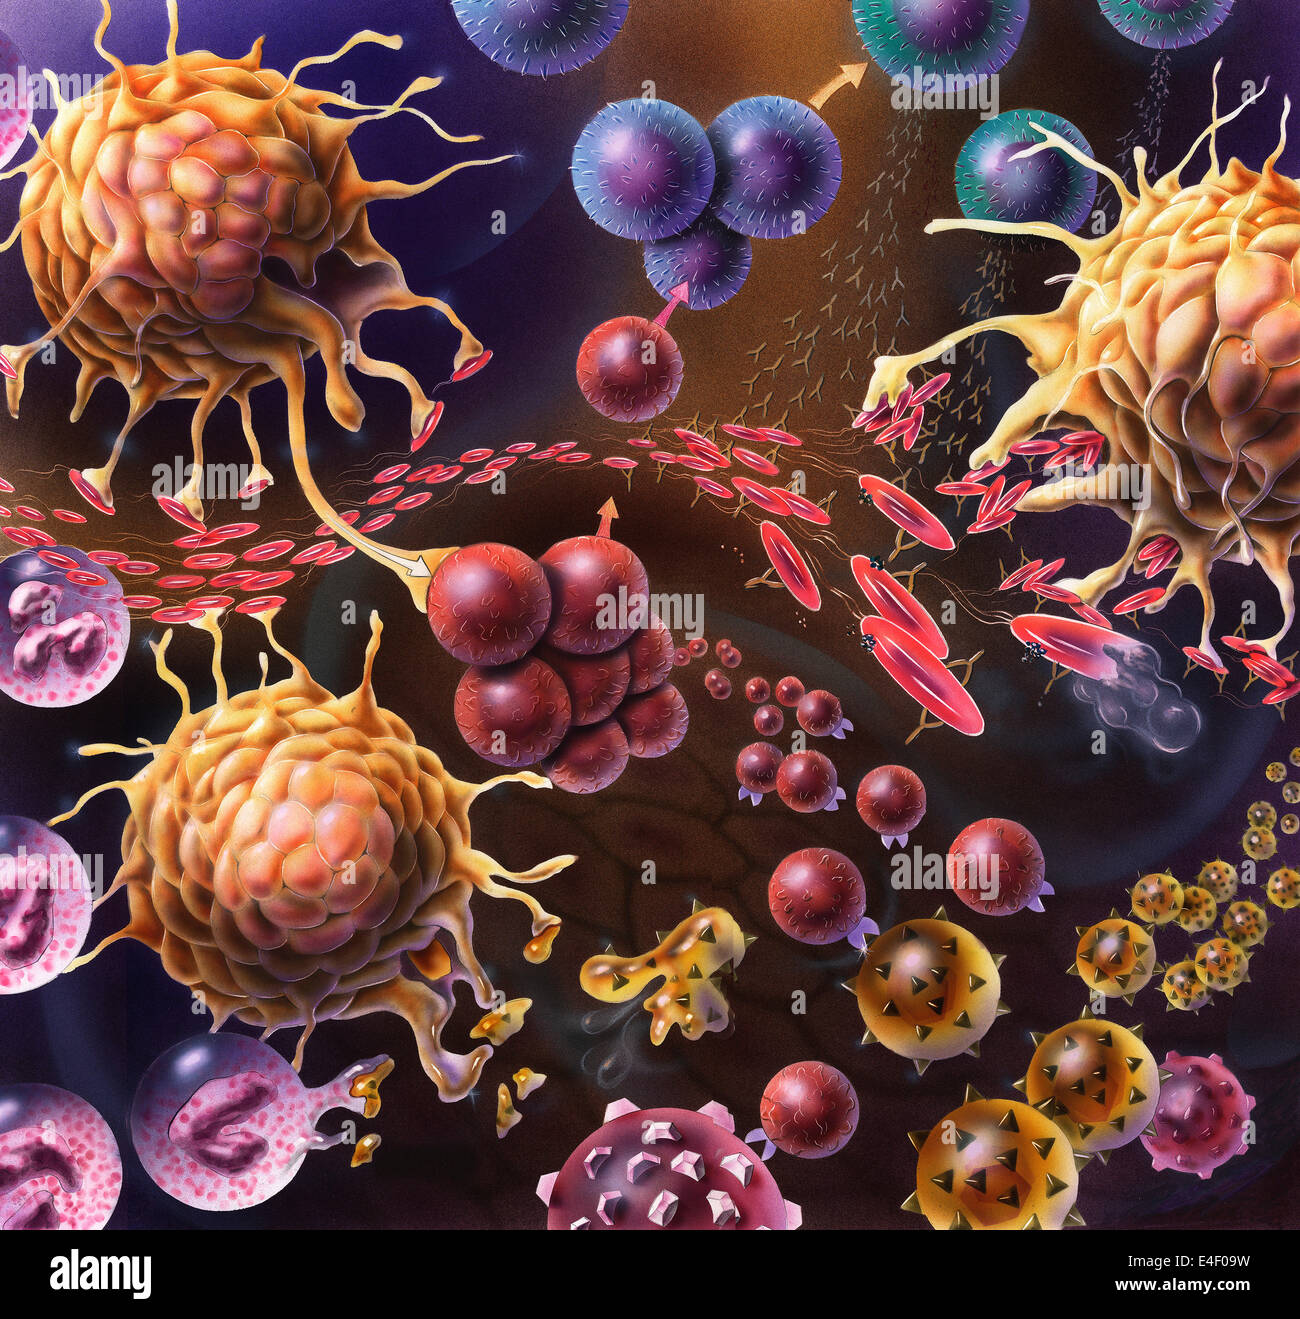 Künstlerische Darstellung des Immunsystems Reaktion auf die Bakterien in das Gewebe eindringen. Stockfoto